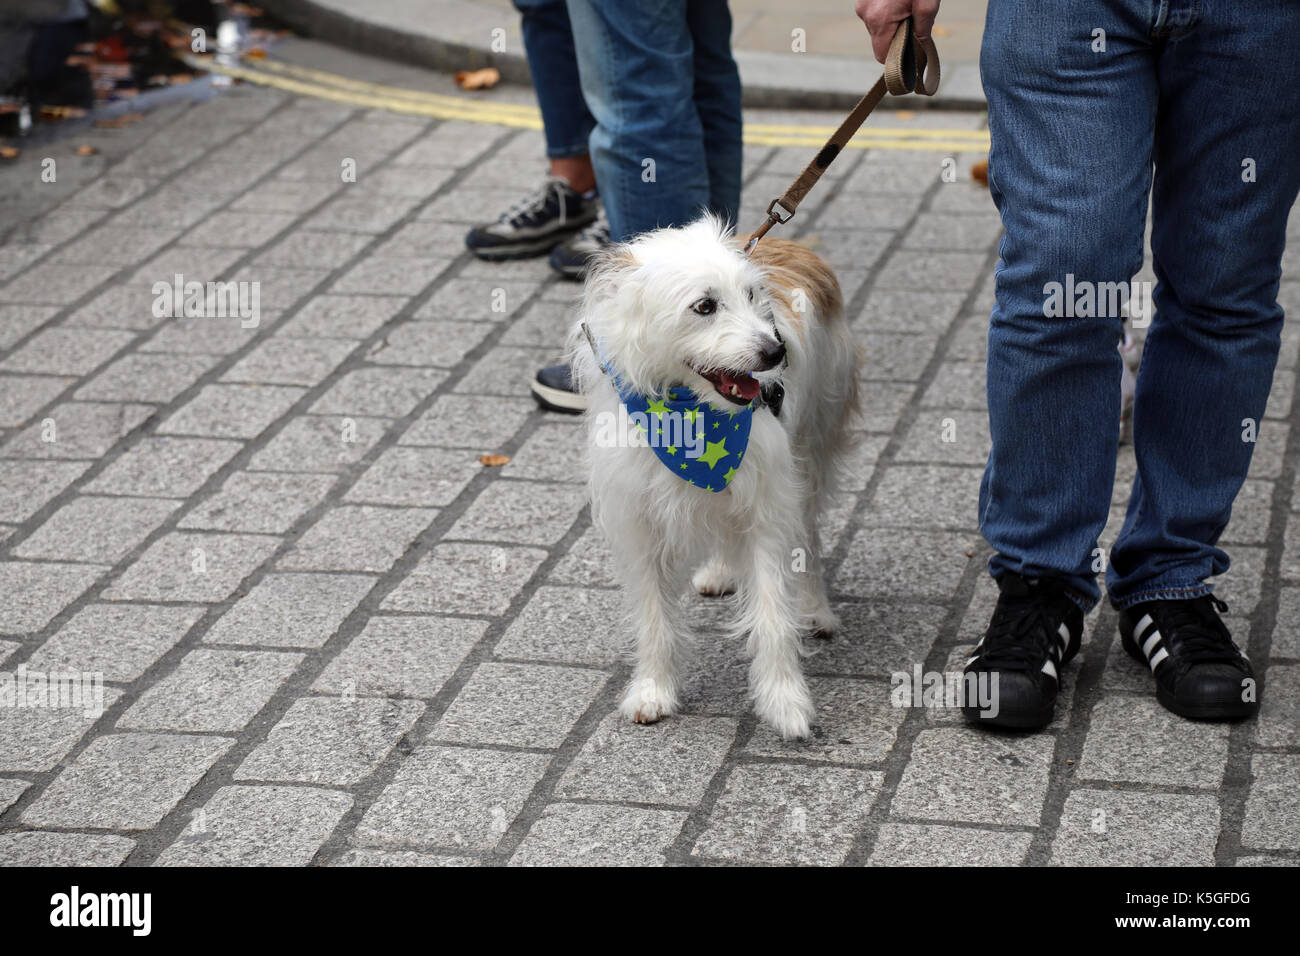 Londres, Royaume-Uni. 9 Septembre, 2017. Un chien porte un foulard décoré d'étoiles de l'UE, au cours de la Marche pour l'Europe, un rassemblement anti-Brexit, le 9 septembre 2017 Crédit : Dominic Dudley/Alamy Live News Banque D'Images